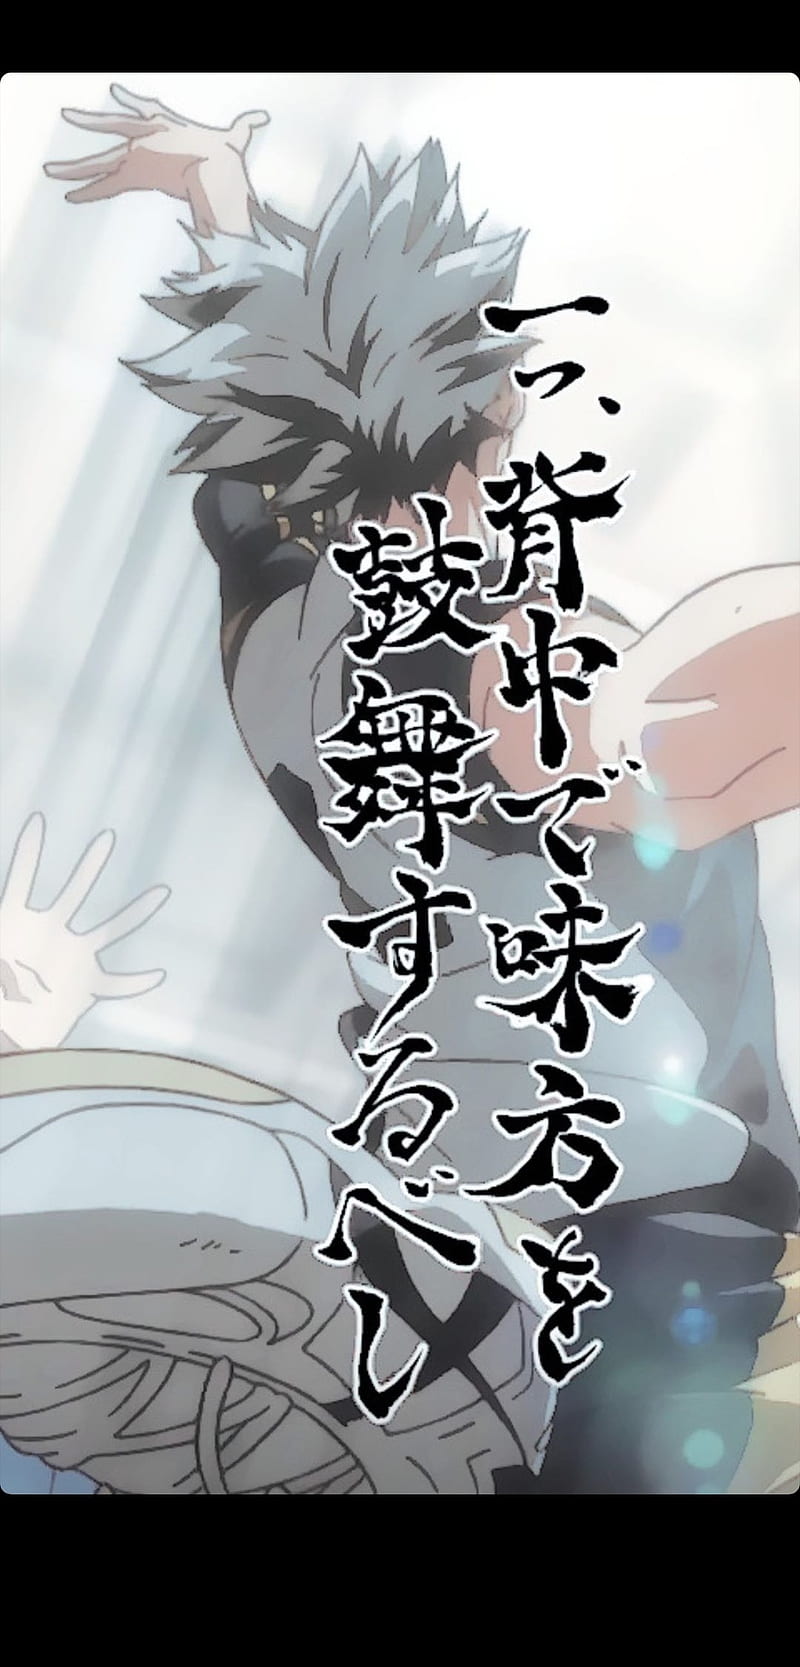 Bokuto Kotaro 4 season /2/  Haikyuu anime, Haikyuu bokuto, Anime character  design